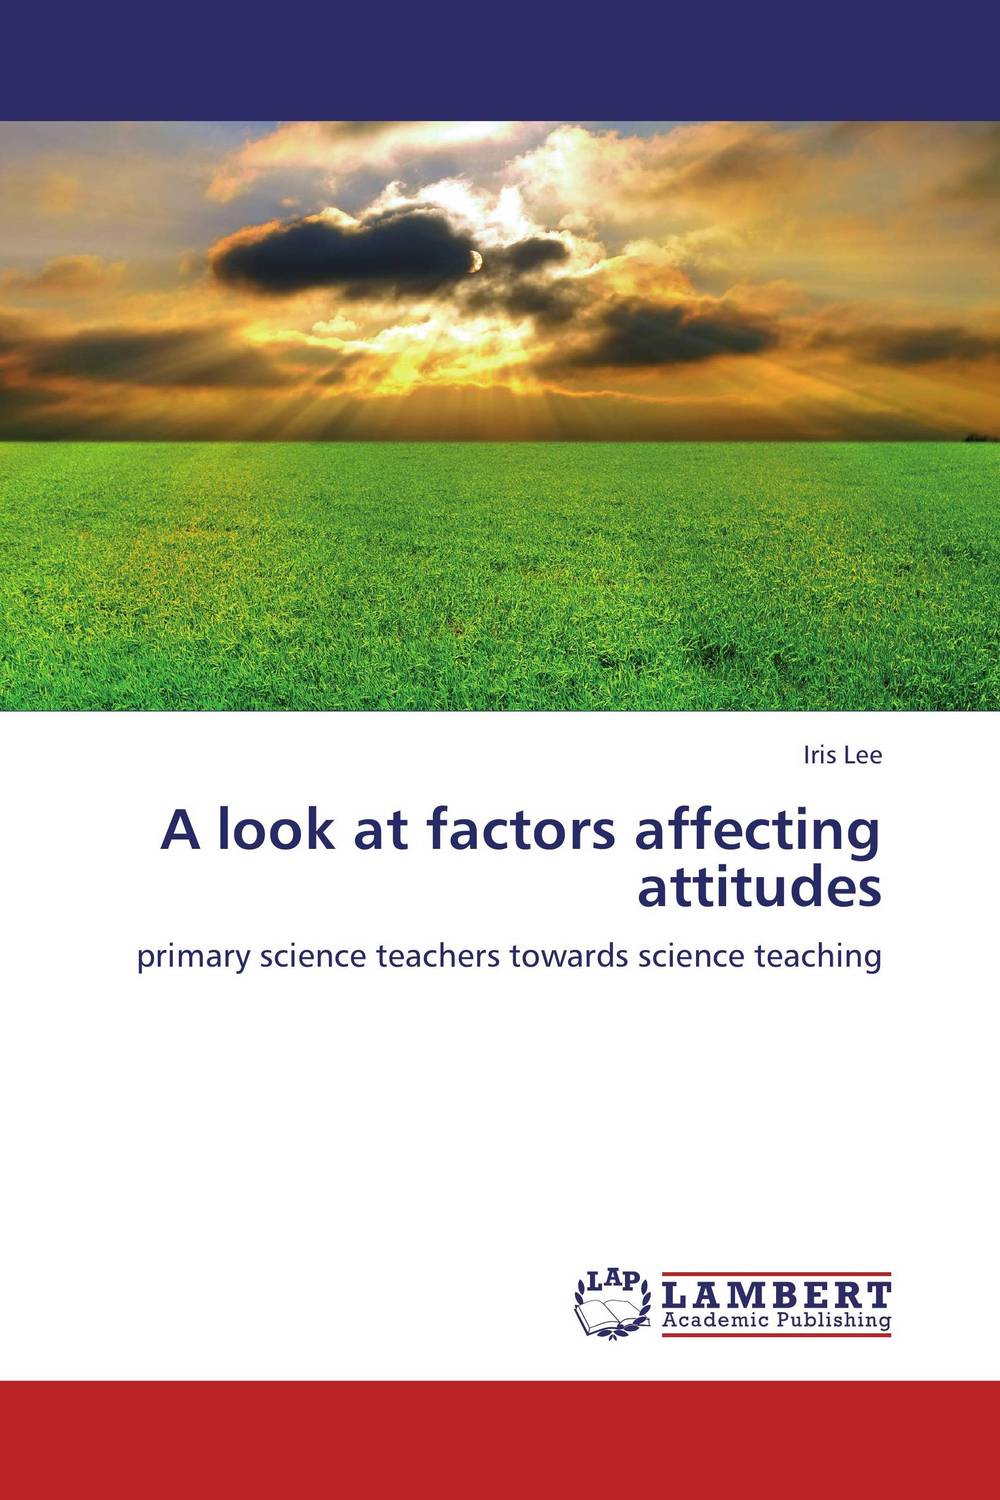 A look at factors affecting attitudes